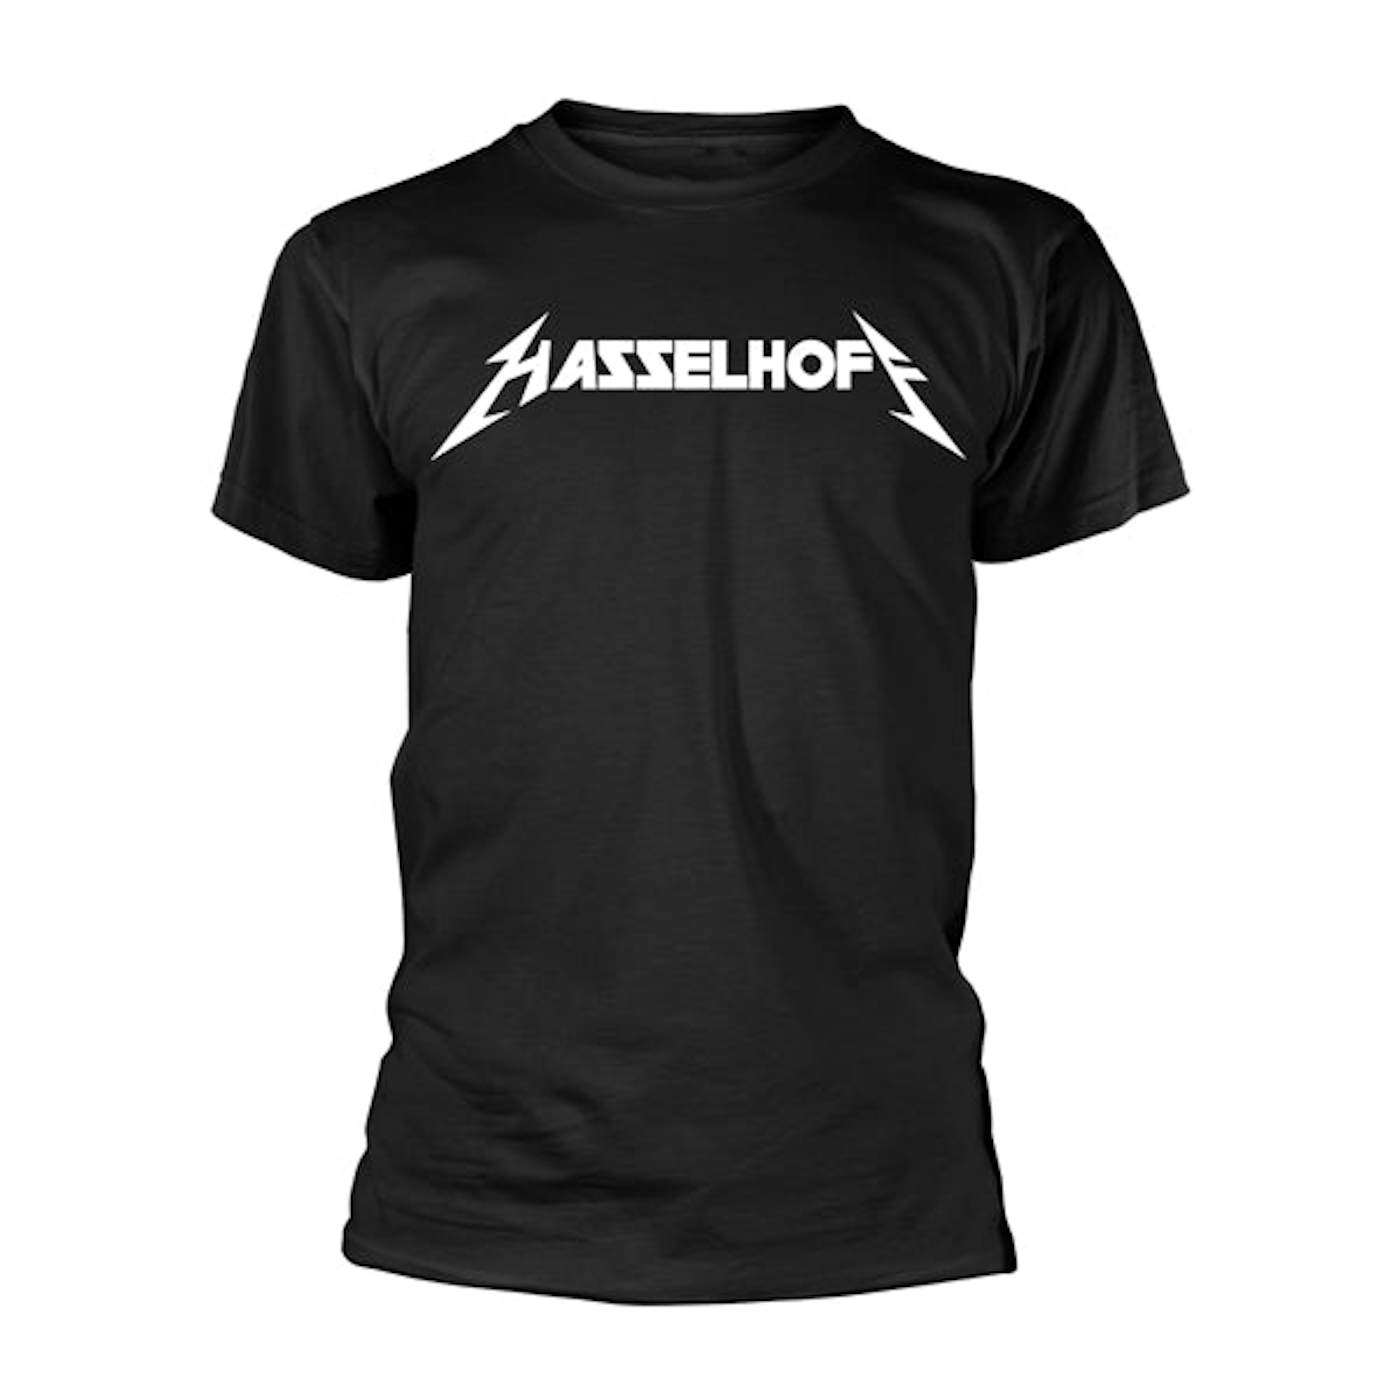 David Hasselhoff T Shirt - Metalhoff